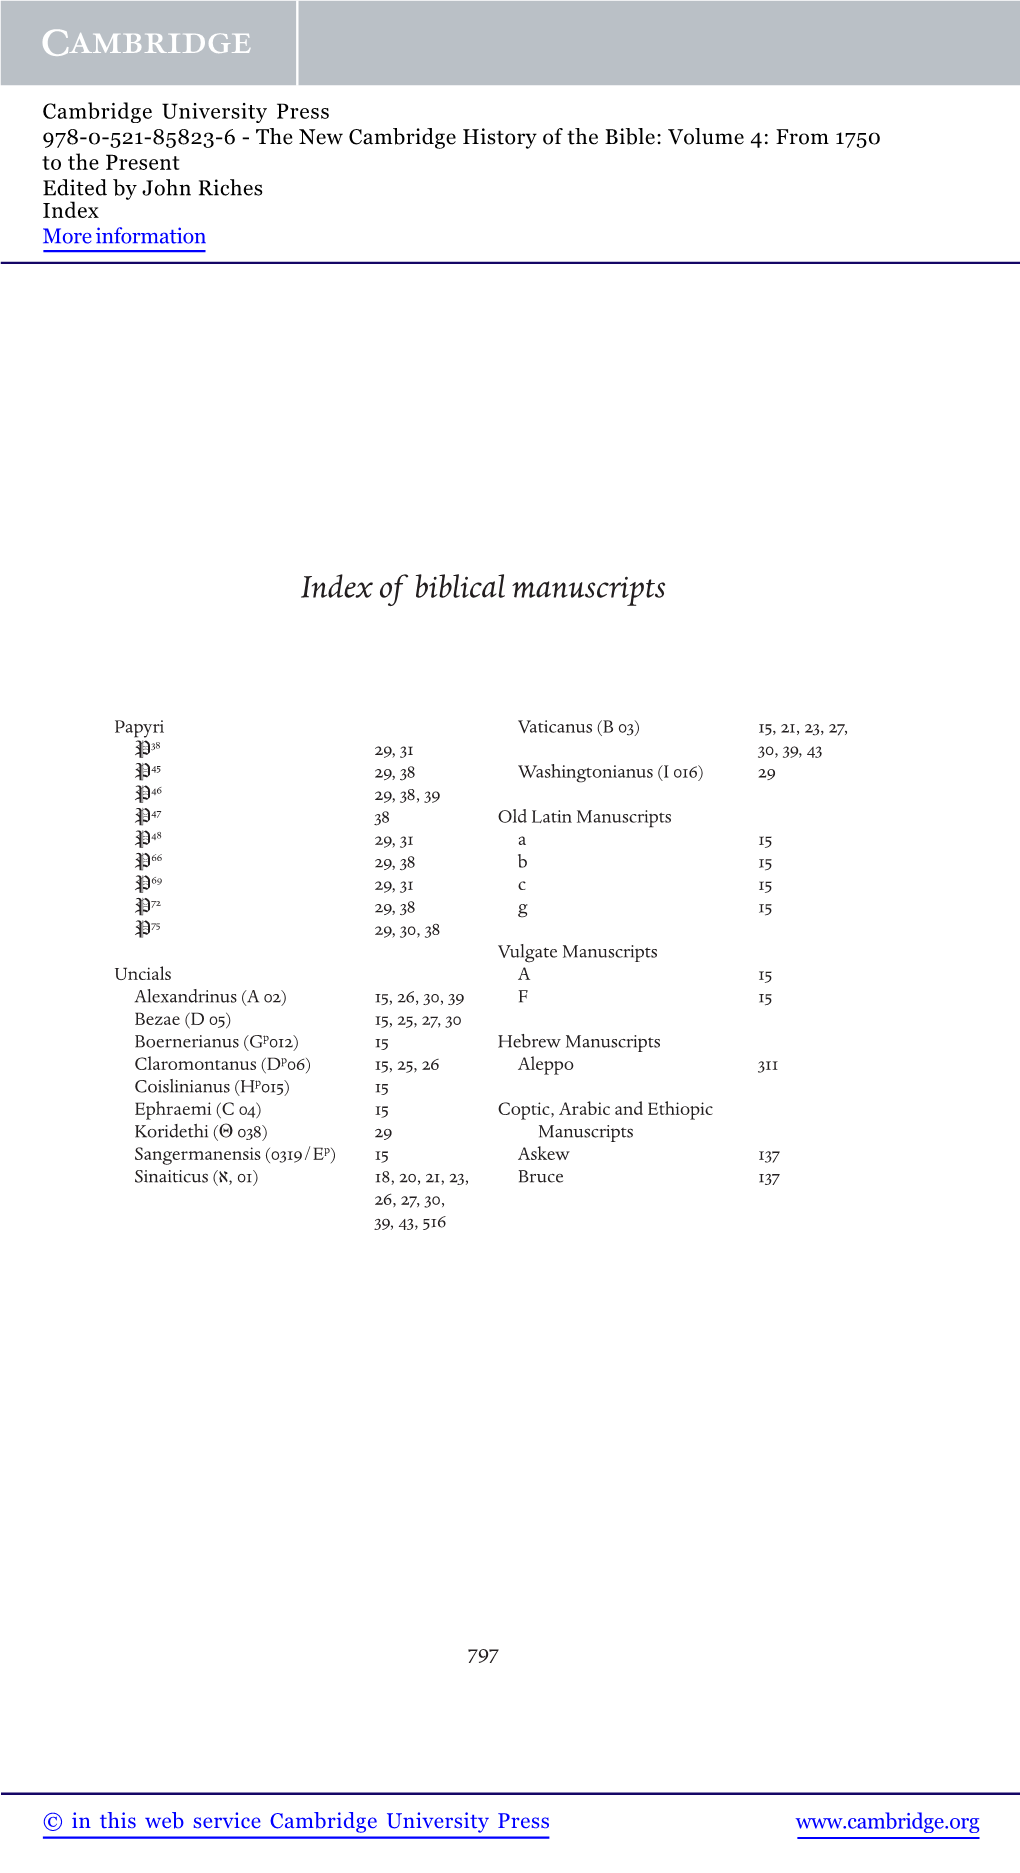 Index of Biblical Manuscripts